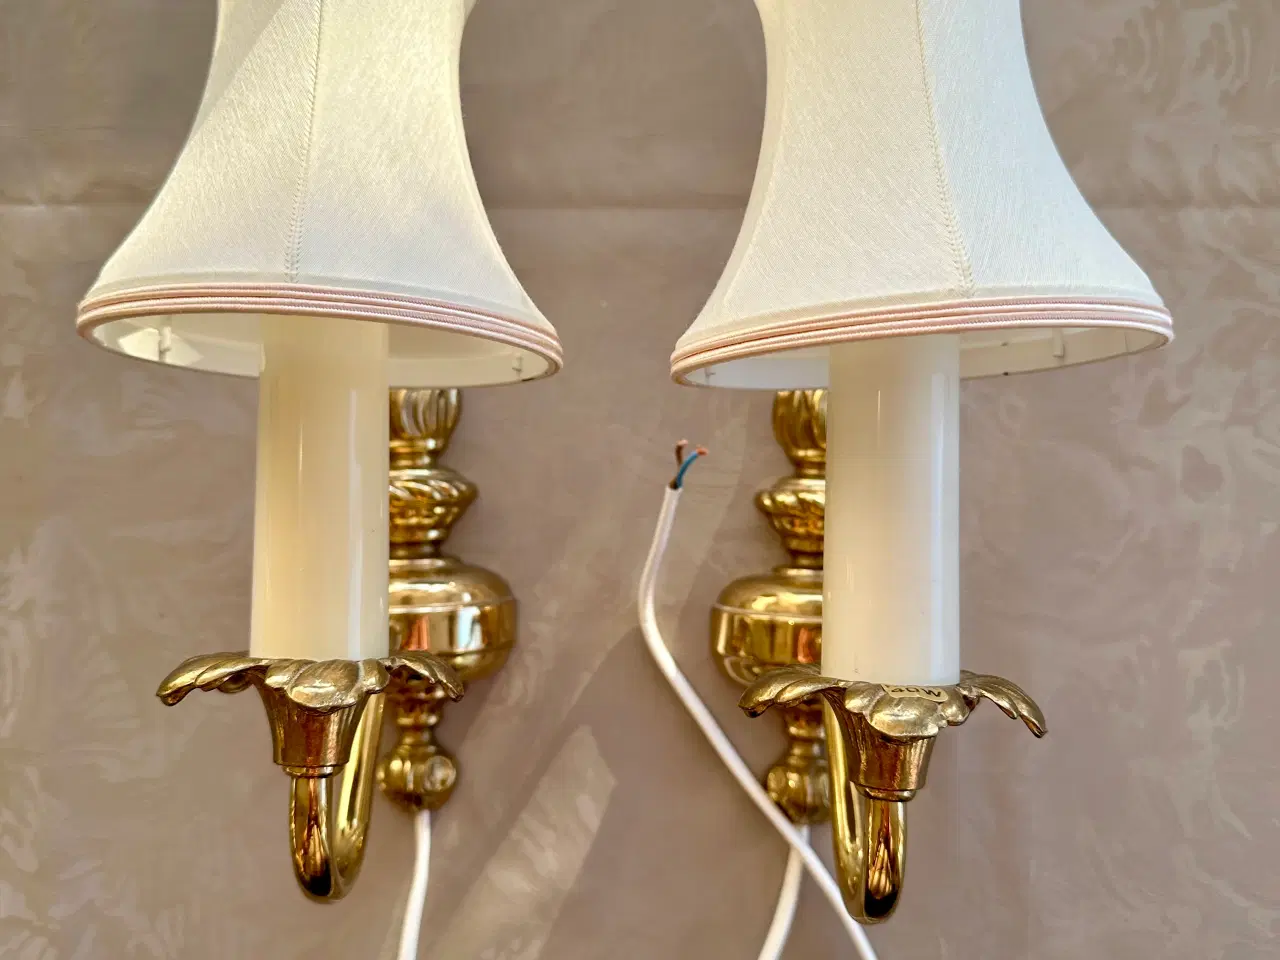 Billede 2 - To vintage væglamper sælges 